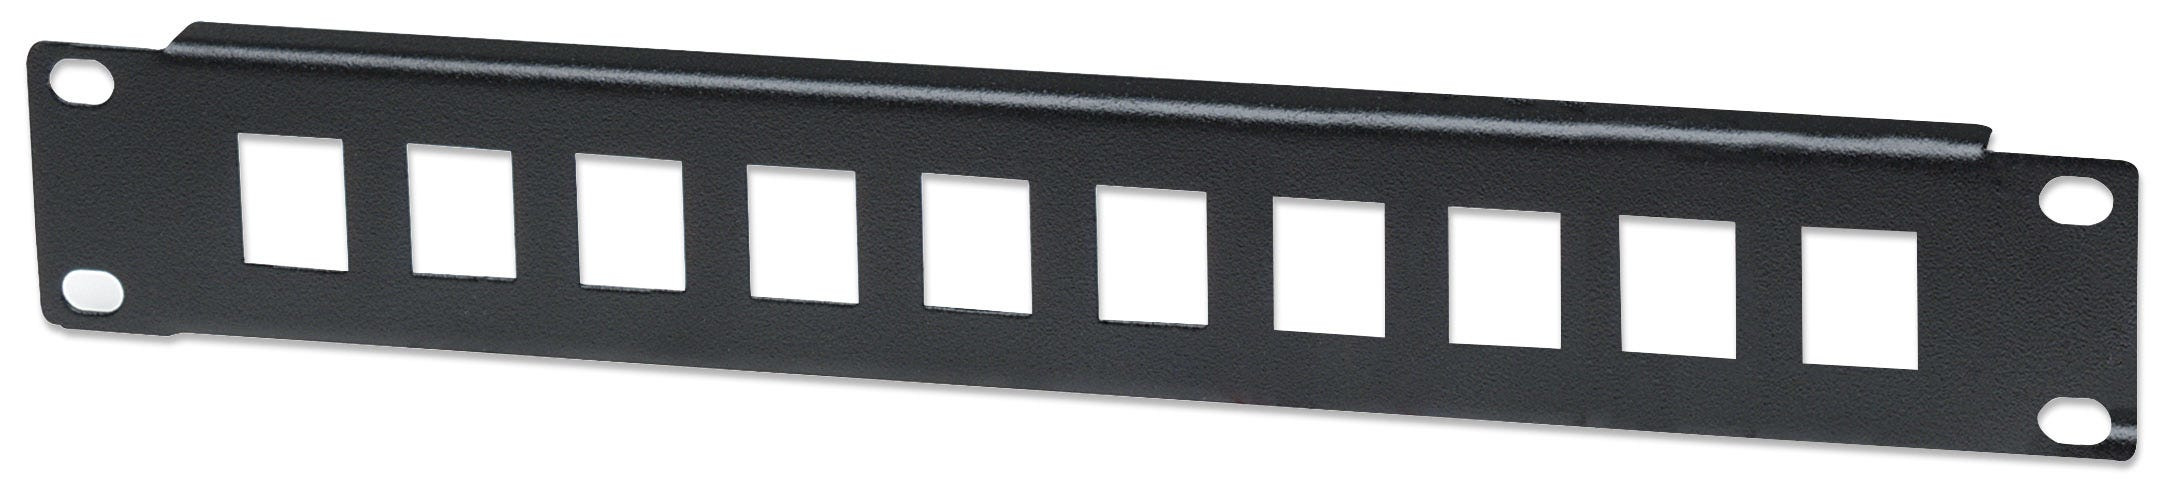 Intellinet                       Blank Patch Panel 10in 10-port-     1u Black                            714860